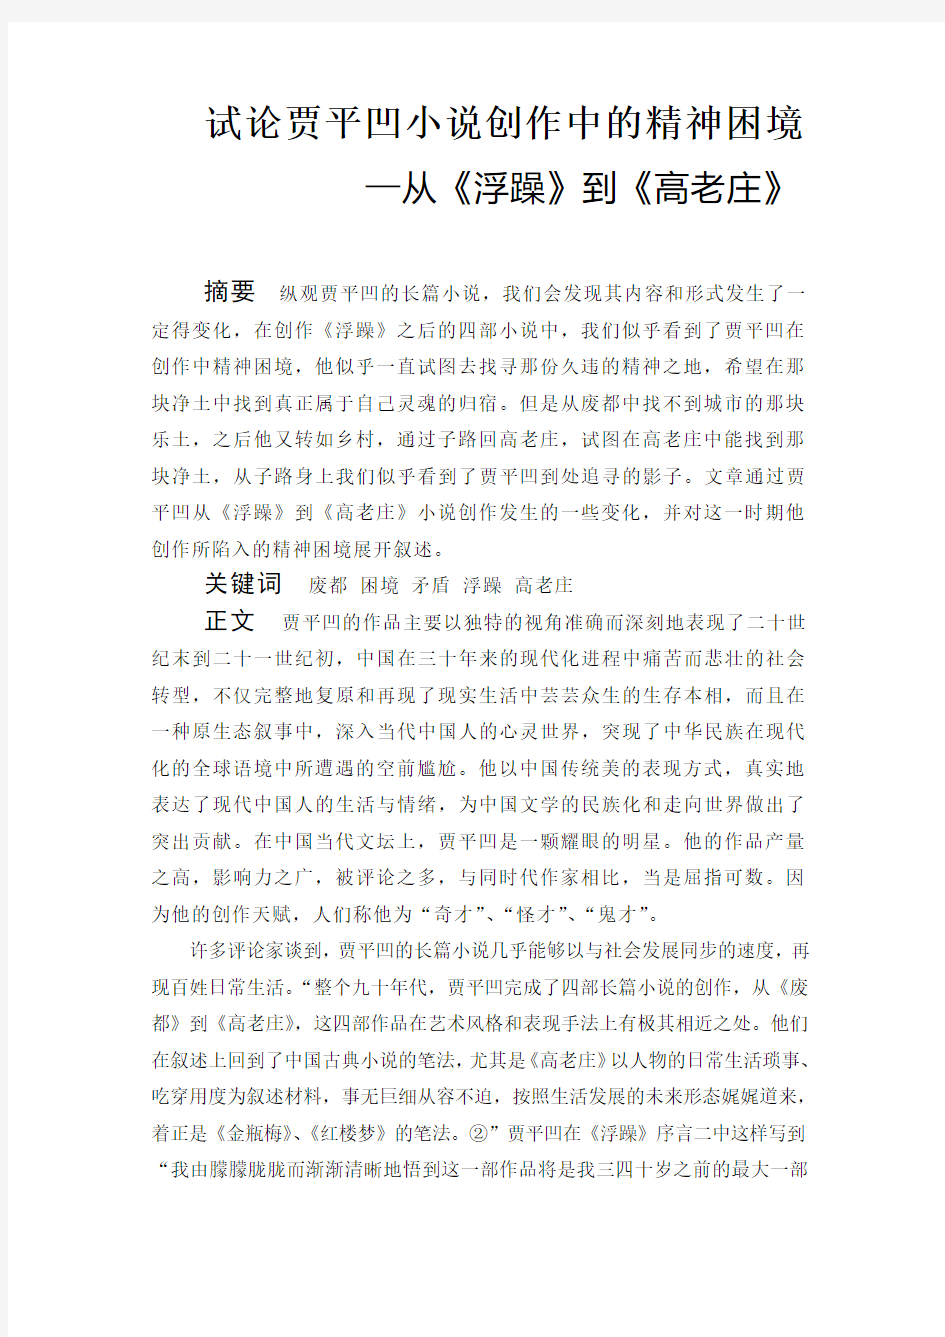 汉语言文学论文 试论贾平凹小说创作中的精神困境—从《浮躁》到